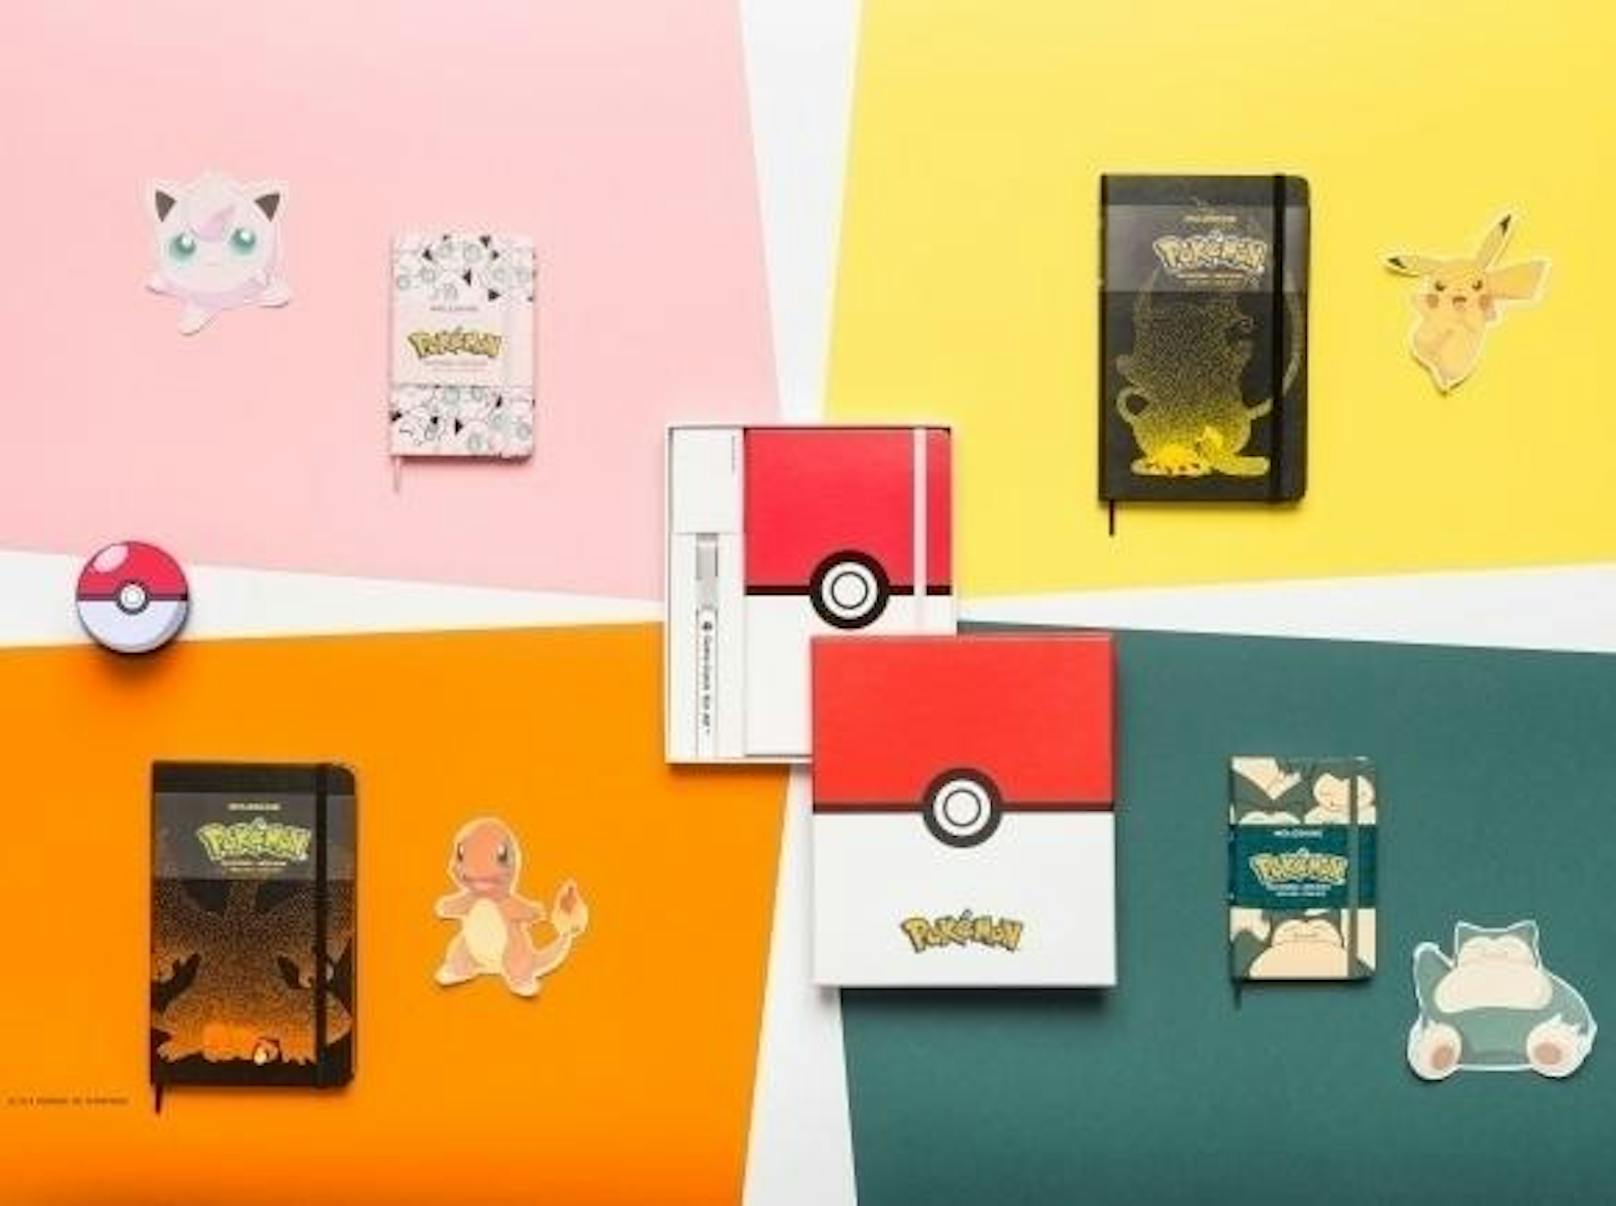 Mit Pokémon zu spielen, bedeutet schon immer, in eine Welt der Geschichten und der Phantasie einzutauchen. Mit der neuen Pokémon Limited Edition feiert Moleskine einige der beliebtesten Pokémon und die Animé Popkultur. Pikachu und Glumanda zieren die Cover der großen Notizbücher im Format 13 cm x 21 cm. Pummeluff und Relaxo sind auf dem Deckel der Notizbücher in Pocket-Größe im Format 9 cm x 14 cm zu finden. Abgerundet wird die Limited Edition durch die Collector's Box, deren Design vom Pokéball in Rot, Schwarz und Weiß inspiriert ist. Die Limited Edition ist ab sofort in allen Moleskine Stores und ausgewählten Schreibwarenabteilungen weltweit sowie online erhältlich.